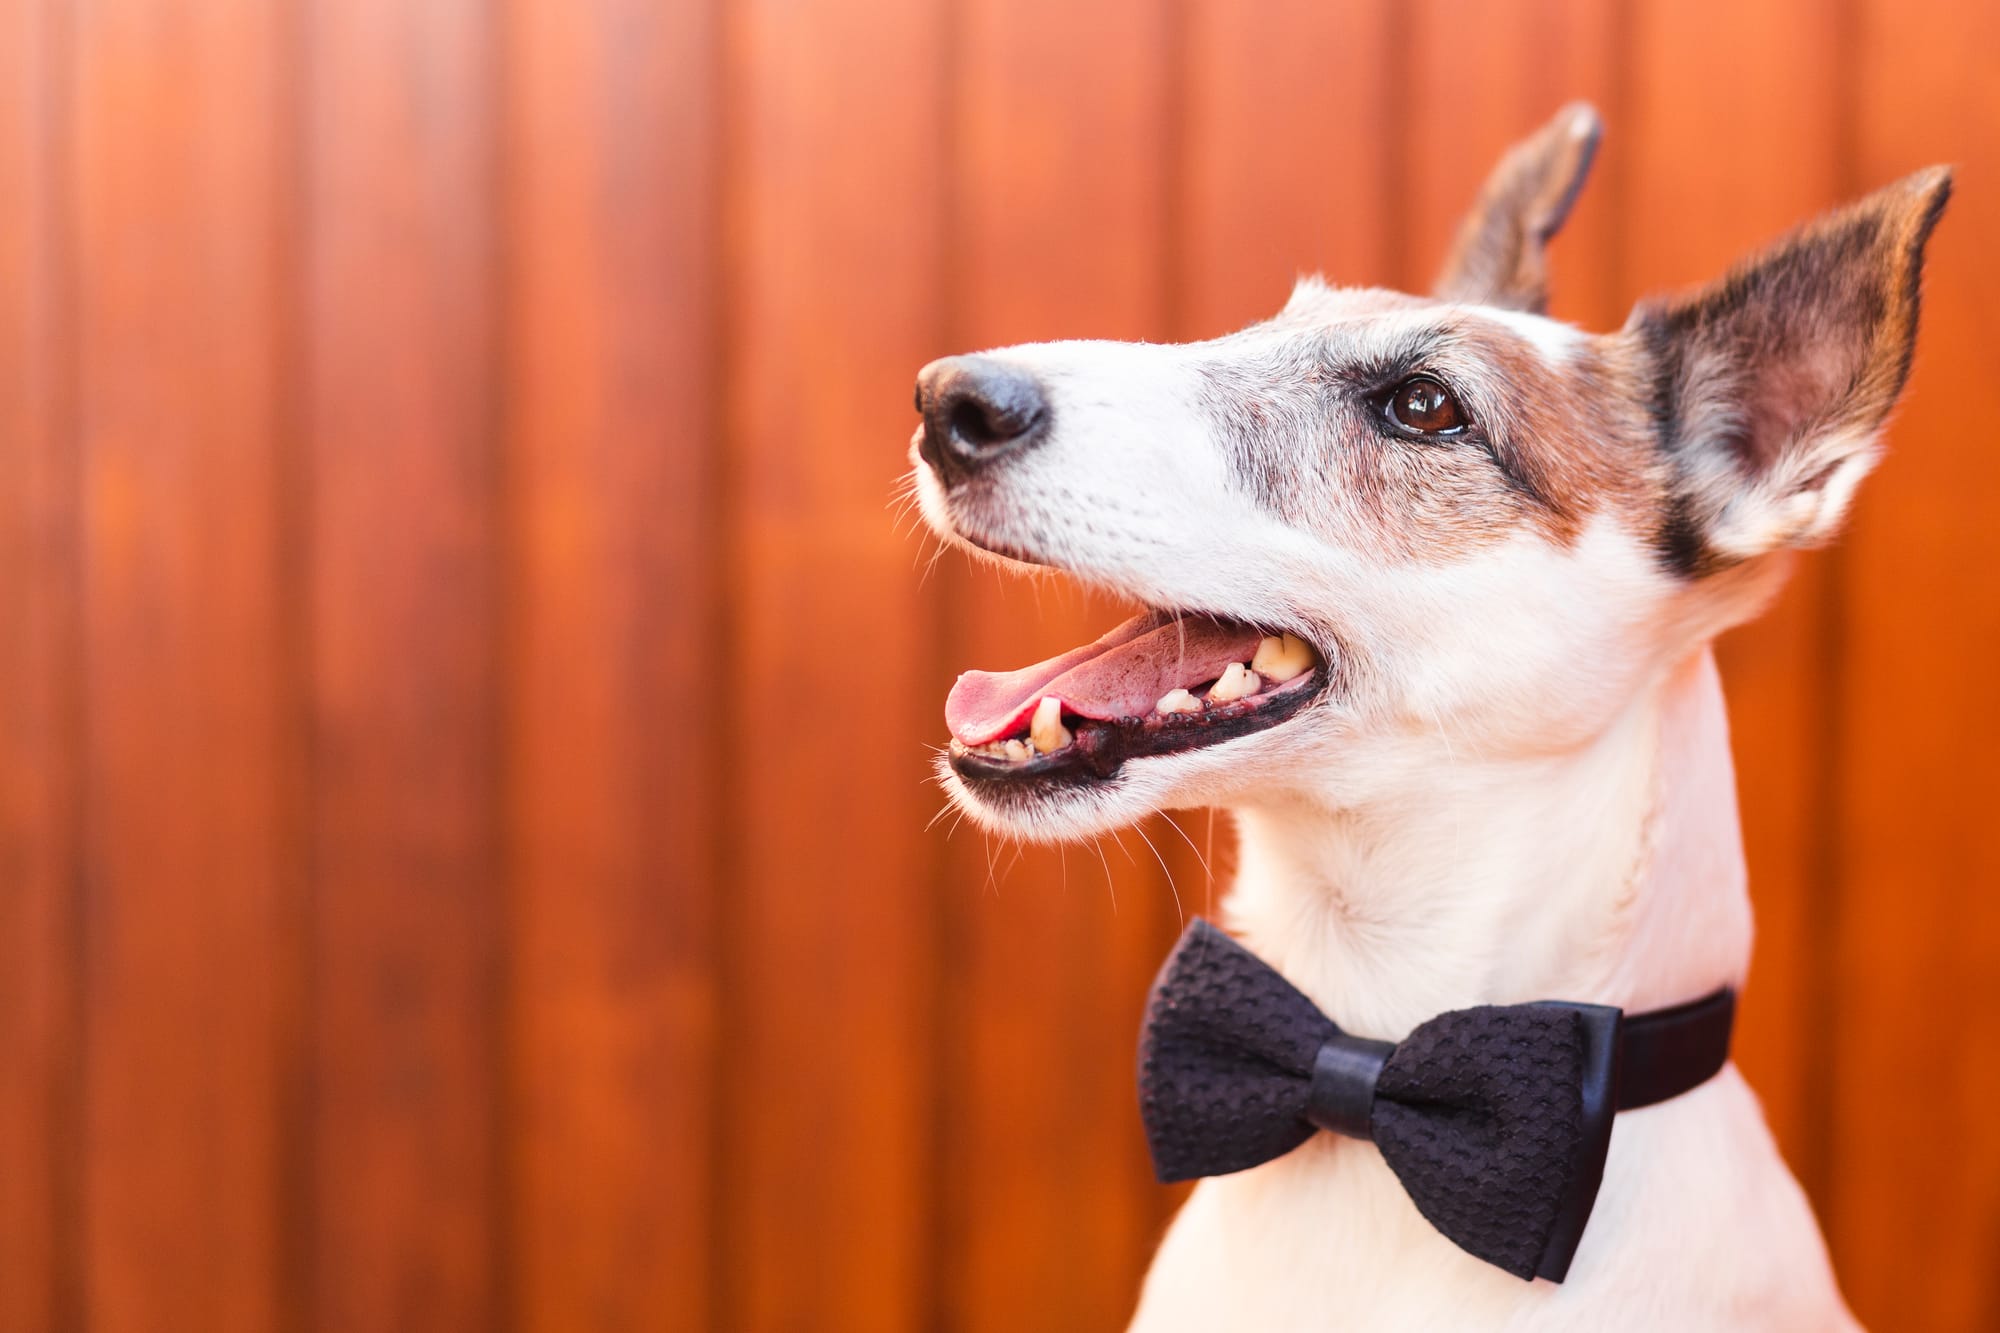 dog bow tie collar